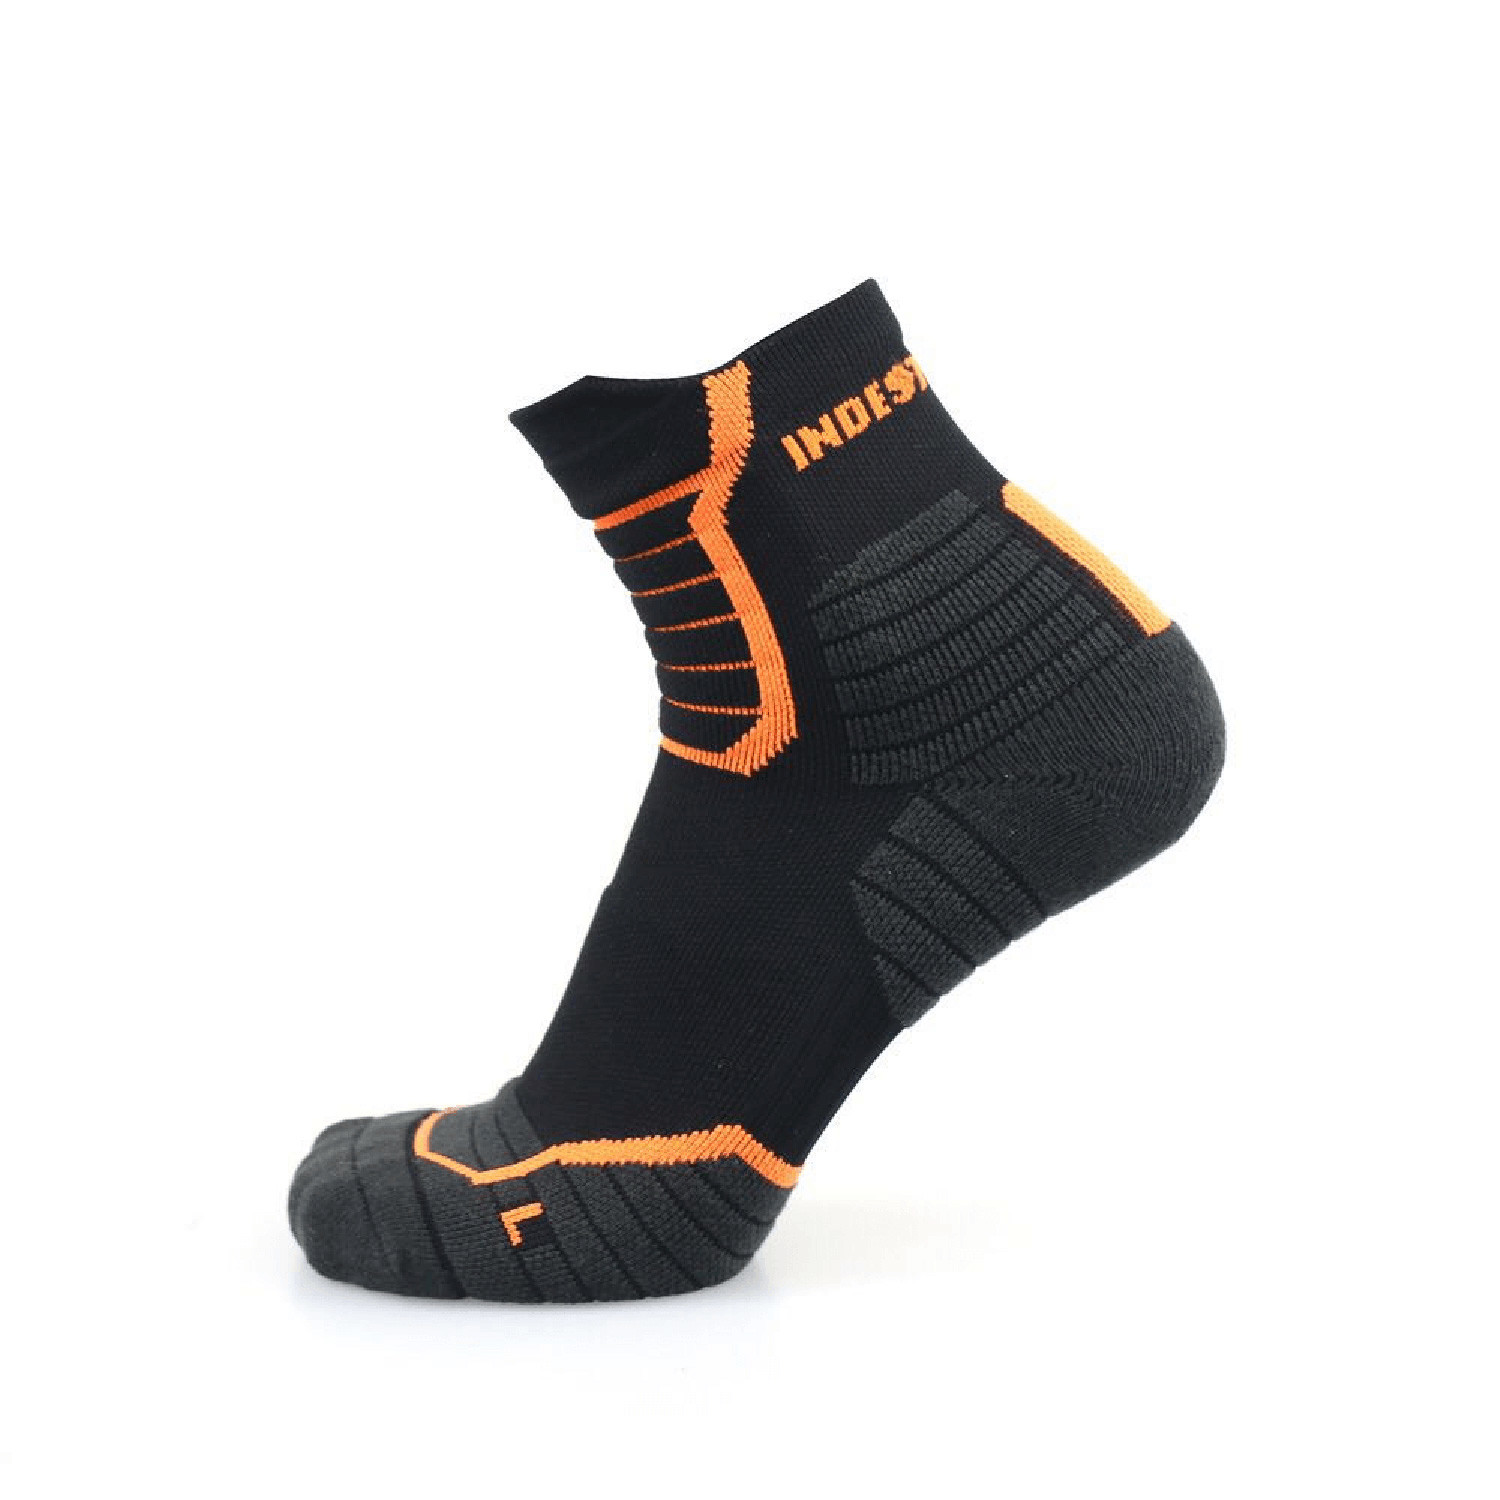 Indestructible Socks // Black // 2 Pack (9-12) - Indestructible Shoes ...